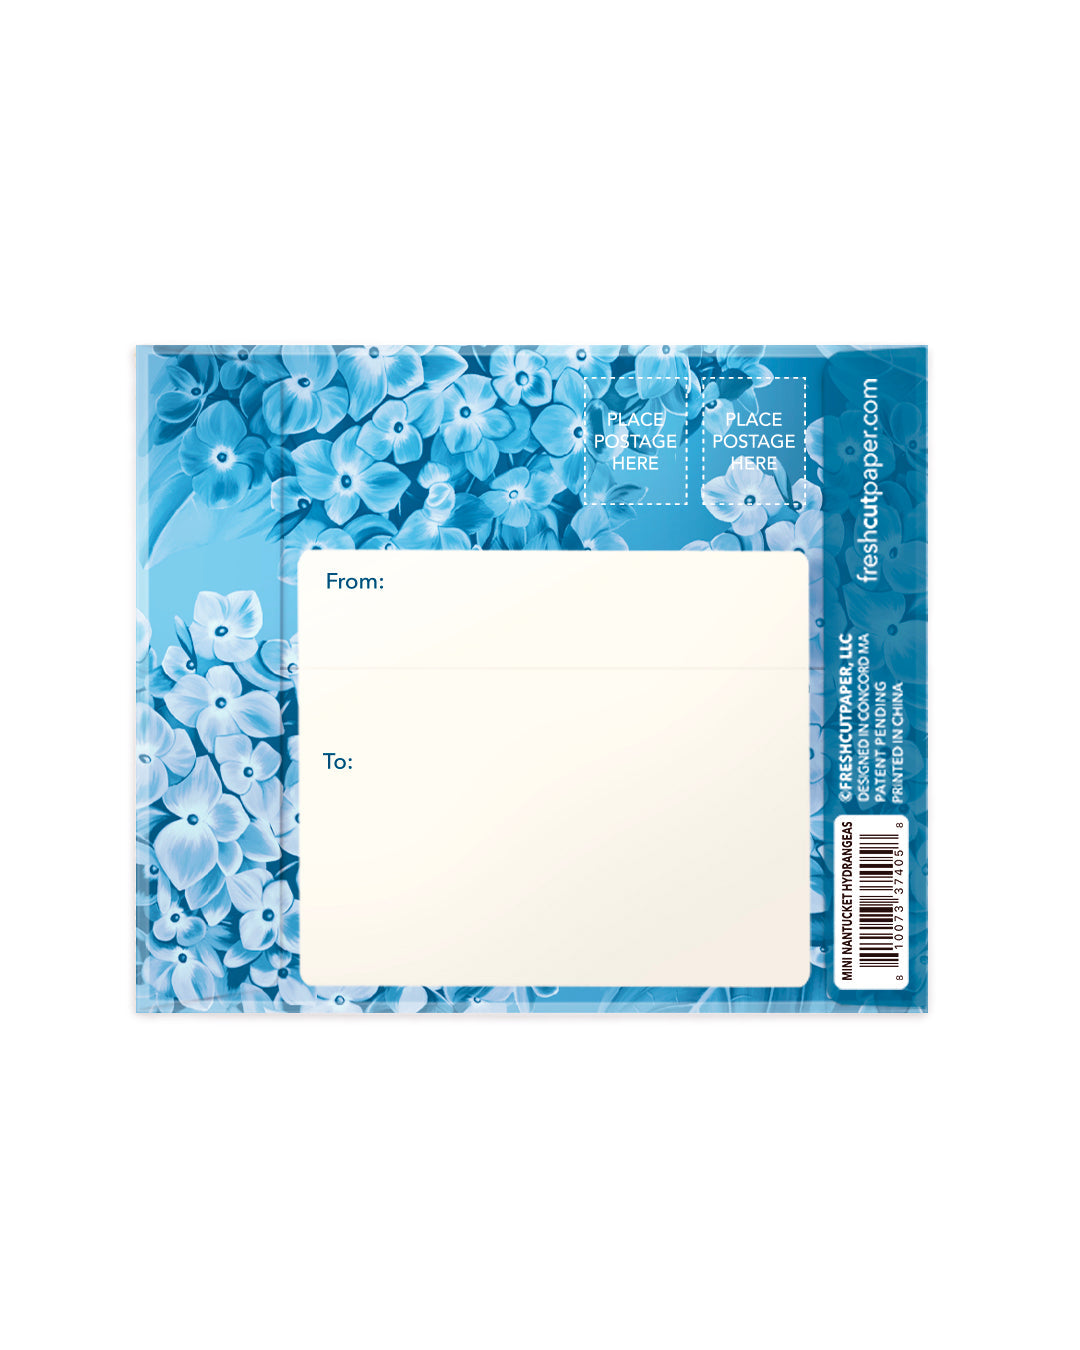 Fresh Cut Paper 3D Pop Up Flower Greeting Note Card – Nantucket Hydrangeas – 6" x 5"